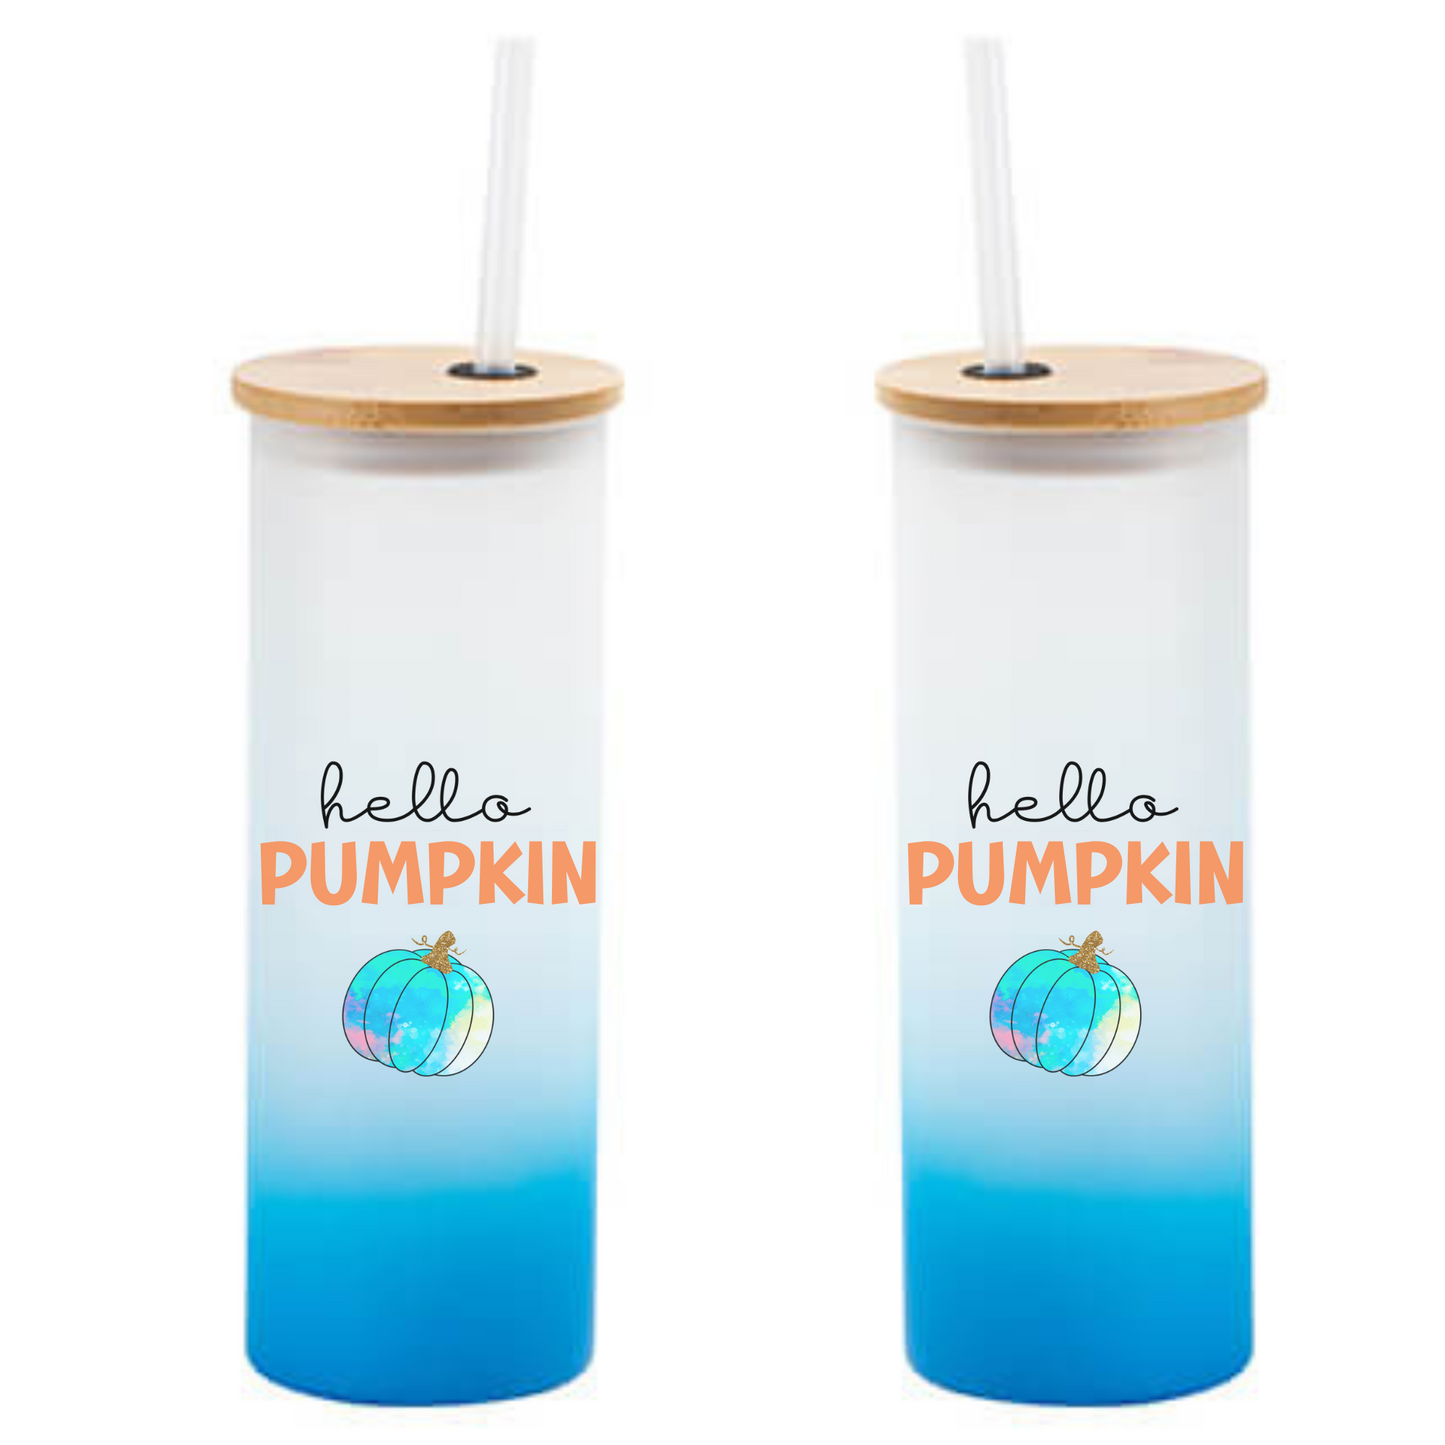 Tumbler blau mit Herbst Design - Hello Pumpkin - Geschenkidee